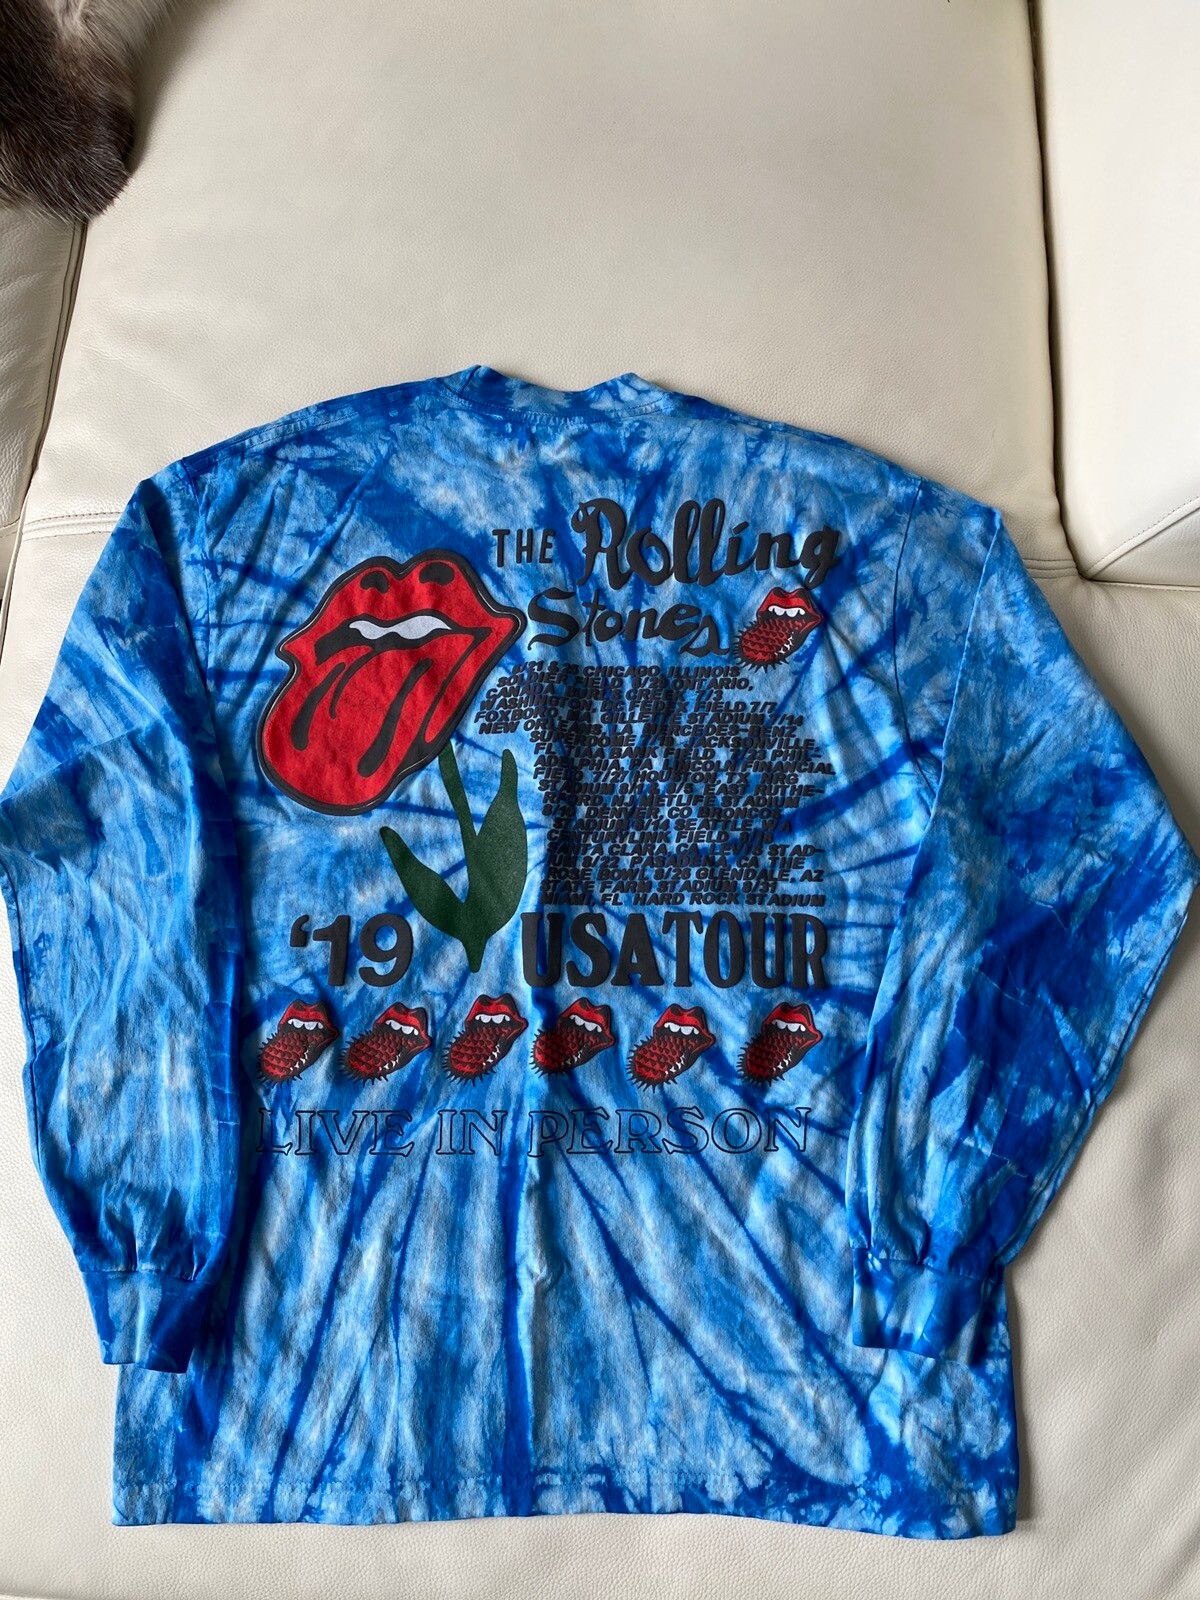 Cactus Plant Flea Market CPFM Rolling Stones 2019 “No Filter” Tour T-Shirt  | Grailed